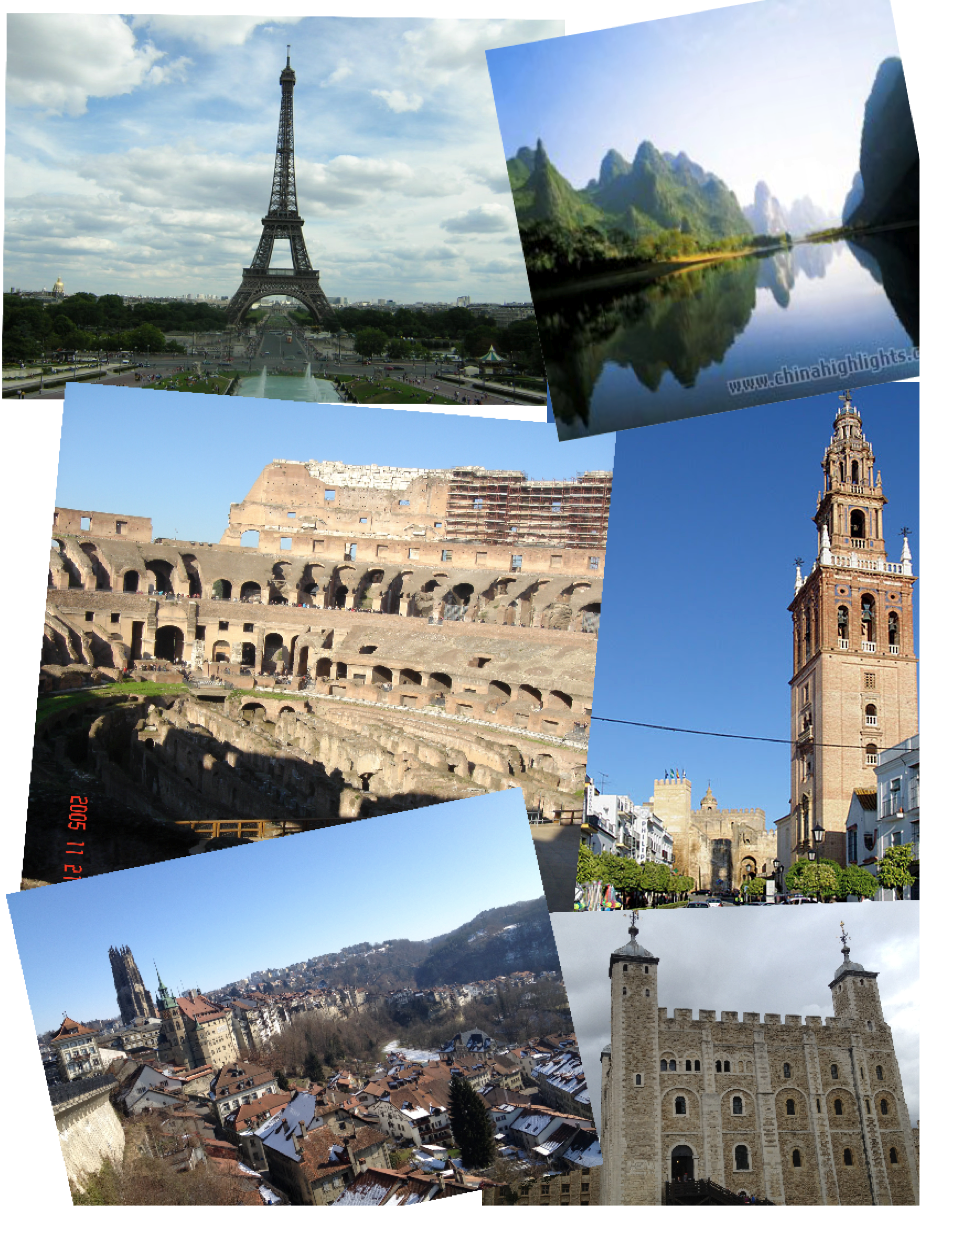 Paris Eiffel Tower, La Giralda in Sevilla, Rome Colloseum, Li River in CHina, Fribourg in Switzerland